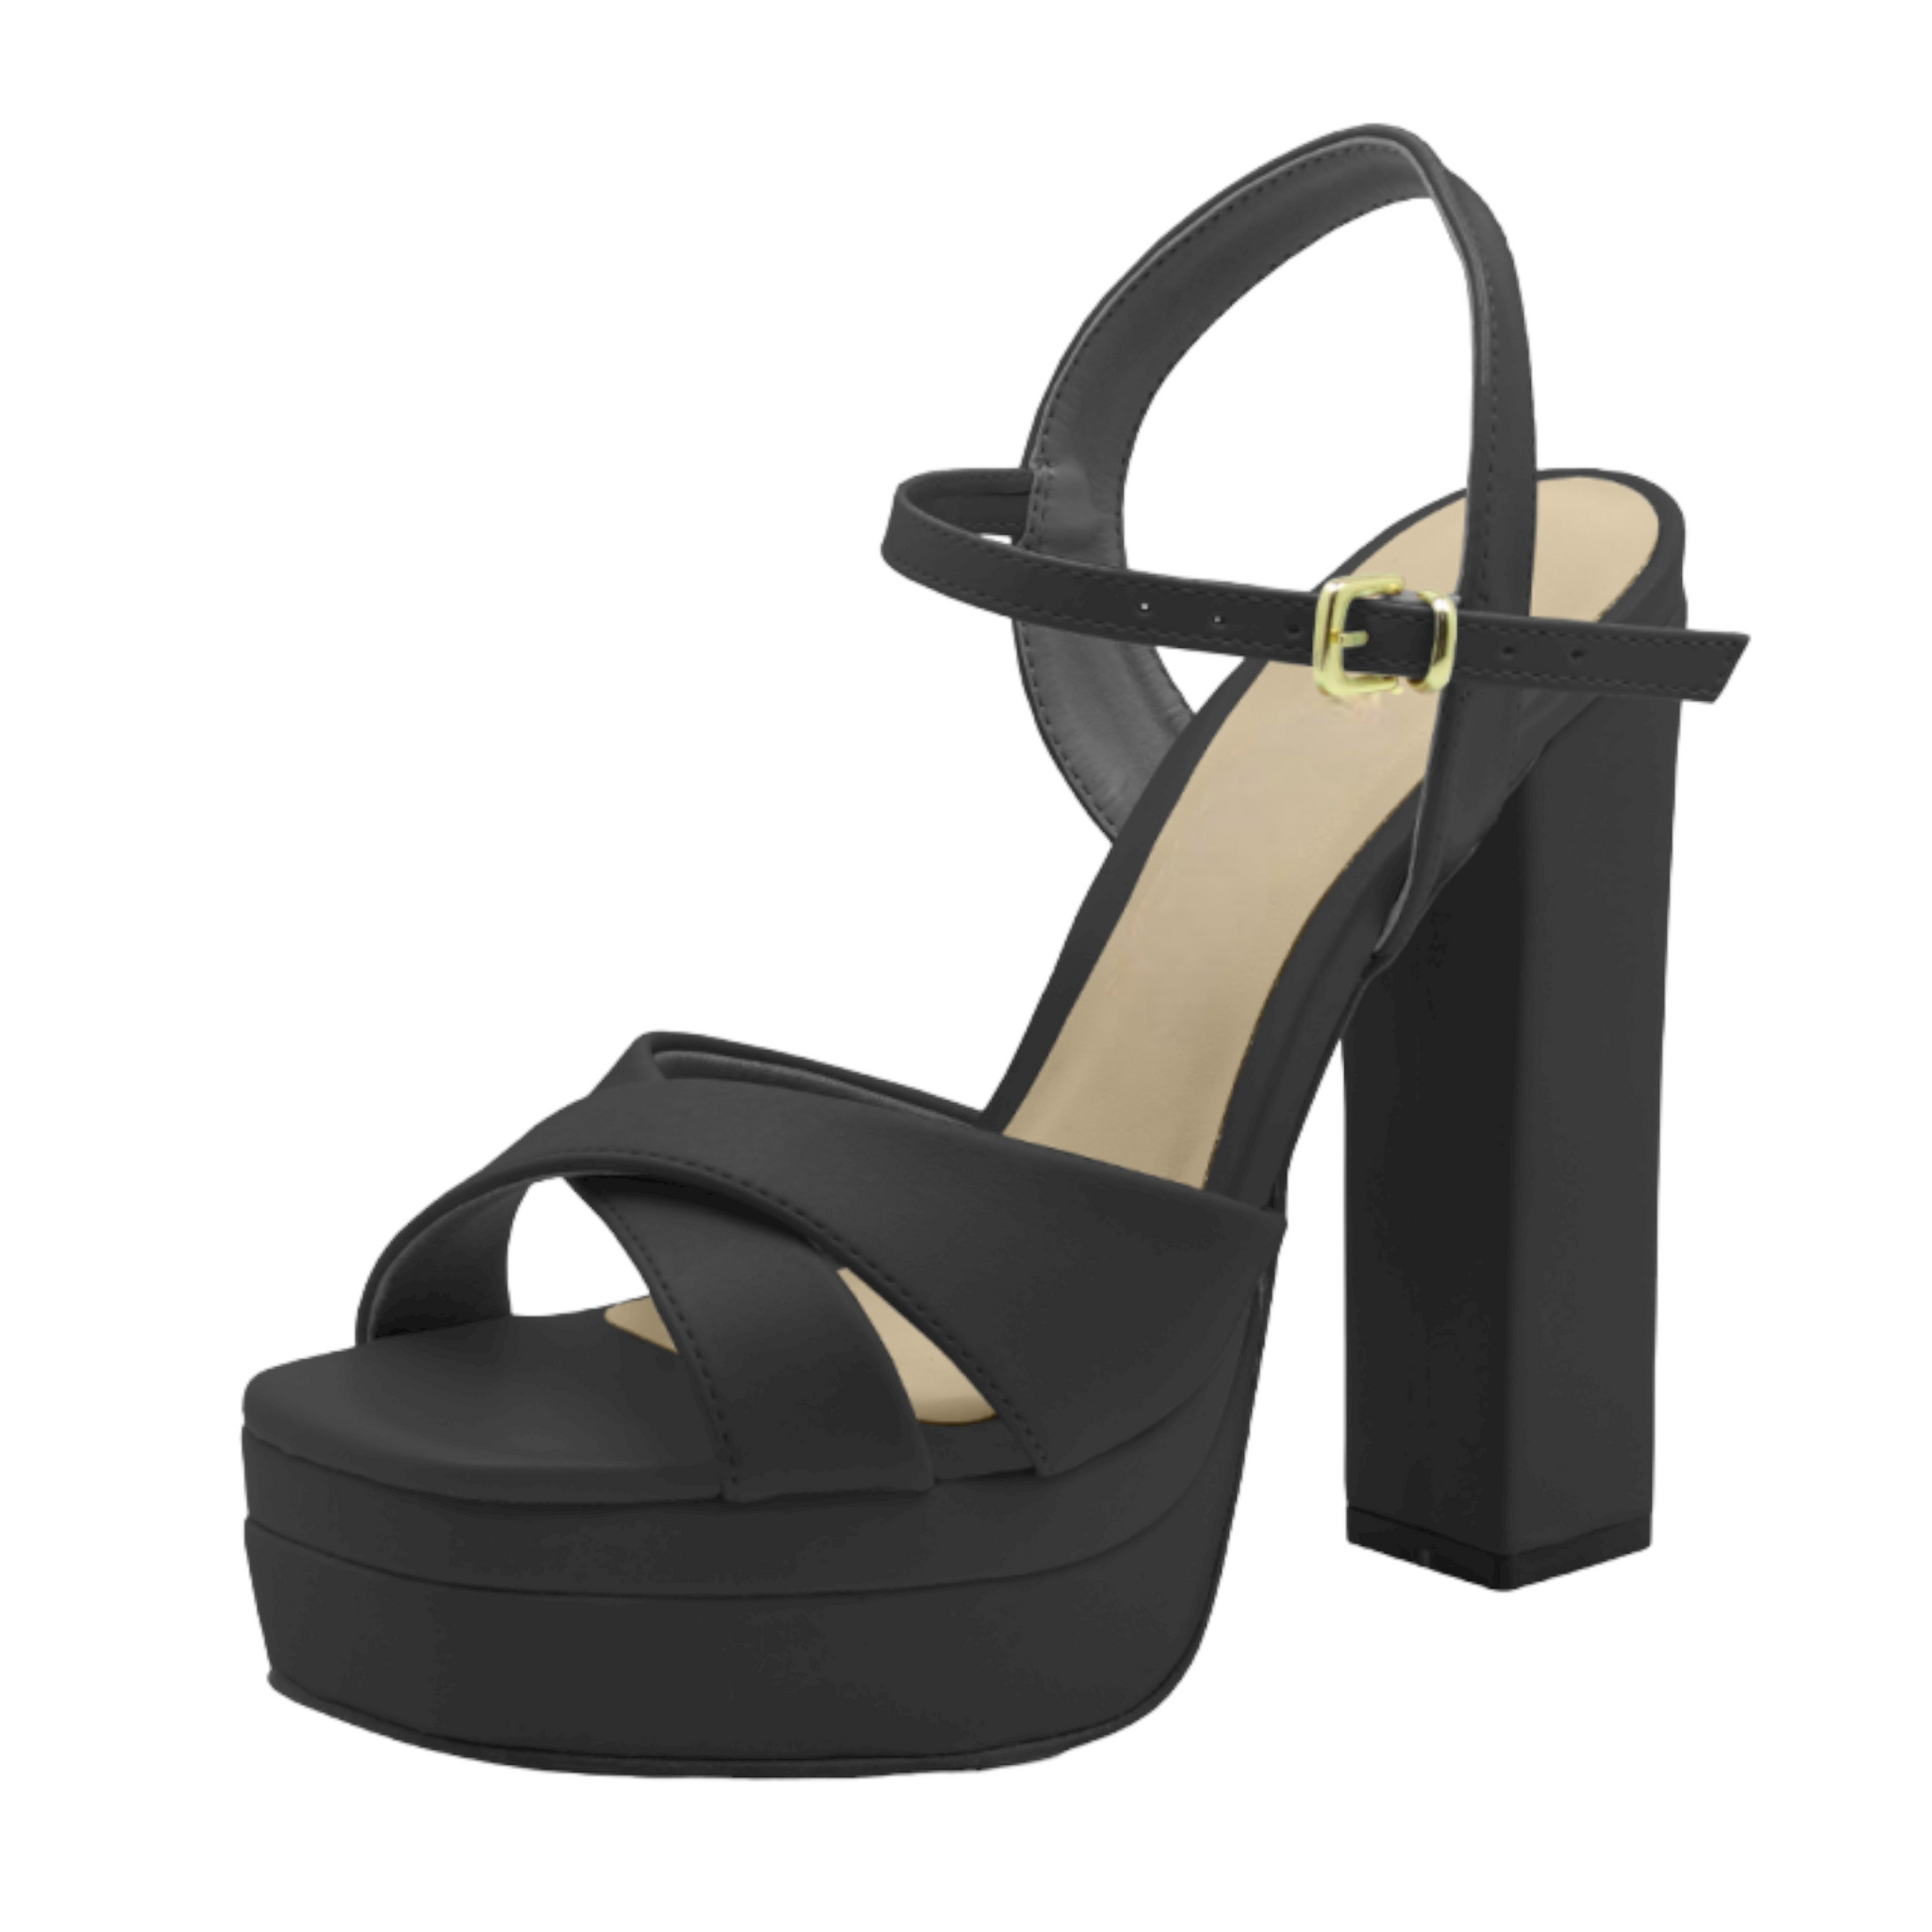 Open Toe Gold Platform Heel with Ankle Strap - Julia & Santos 